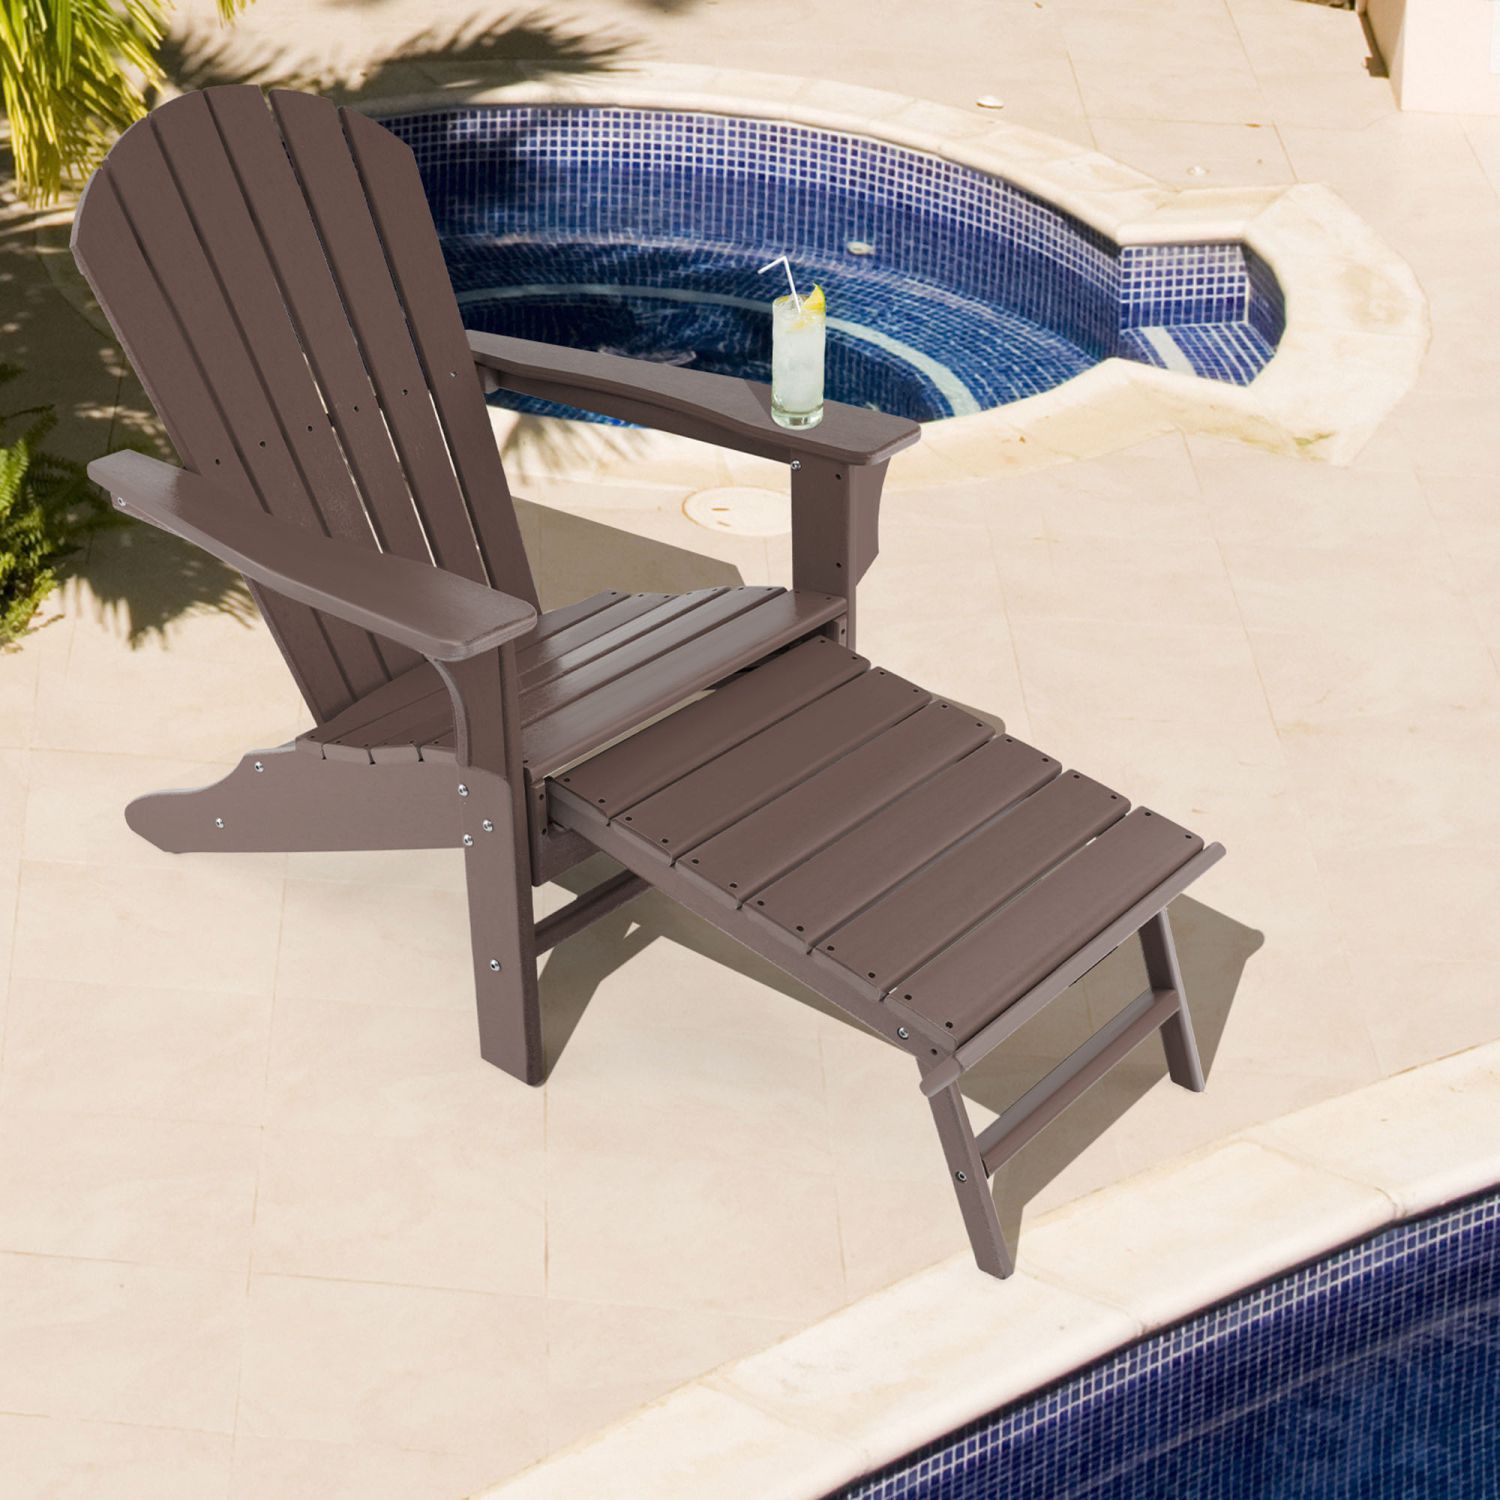 HDPE deck chair